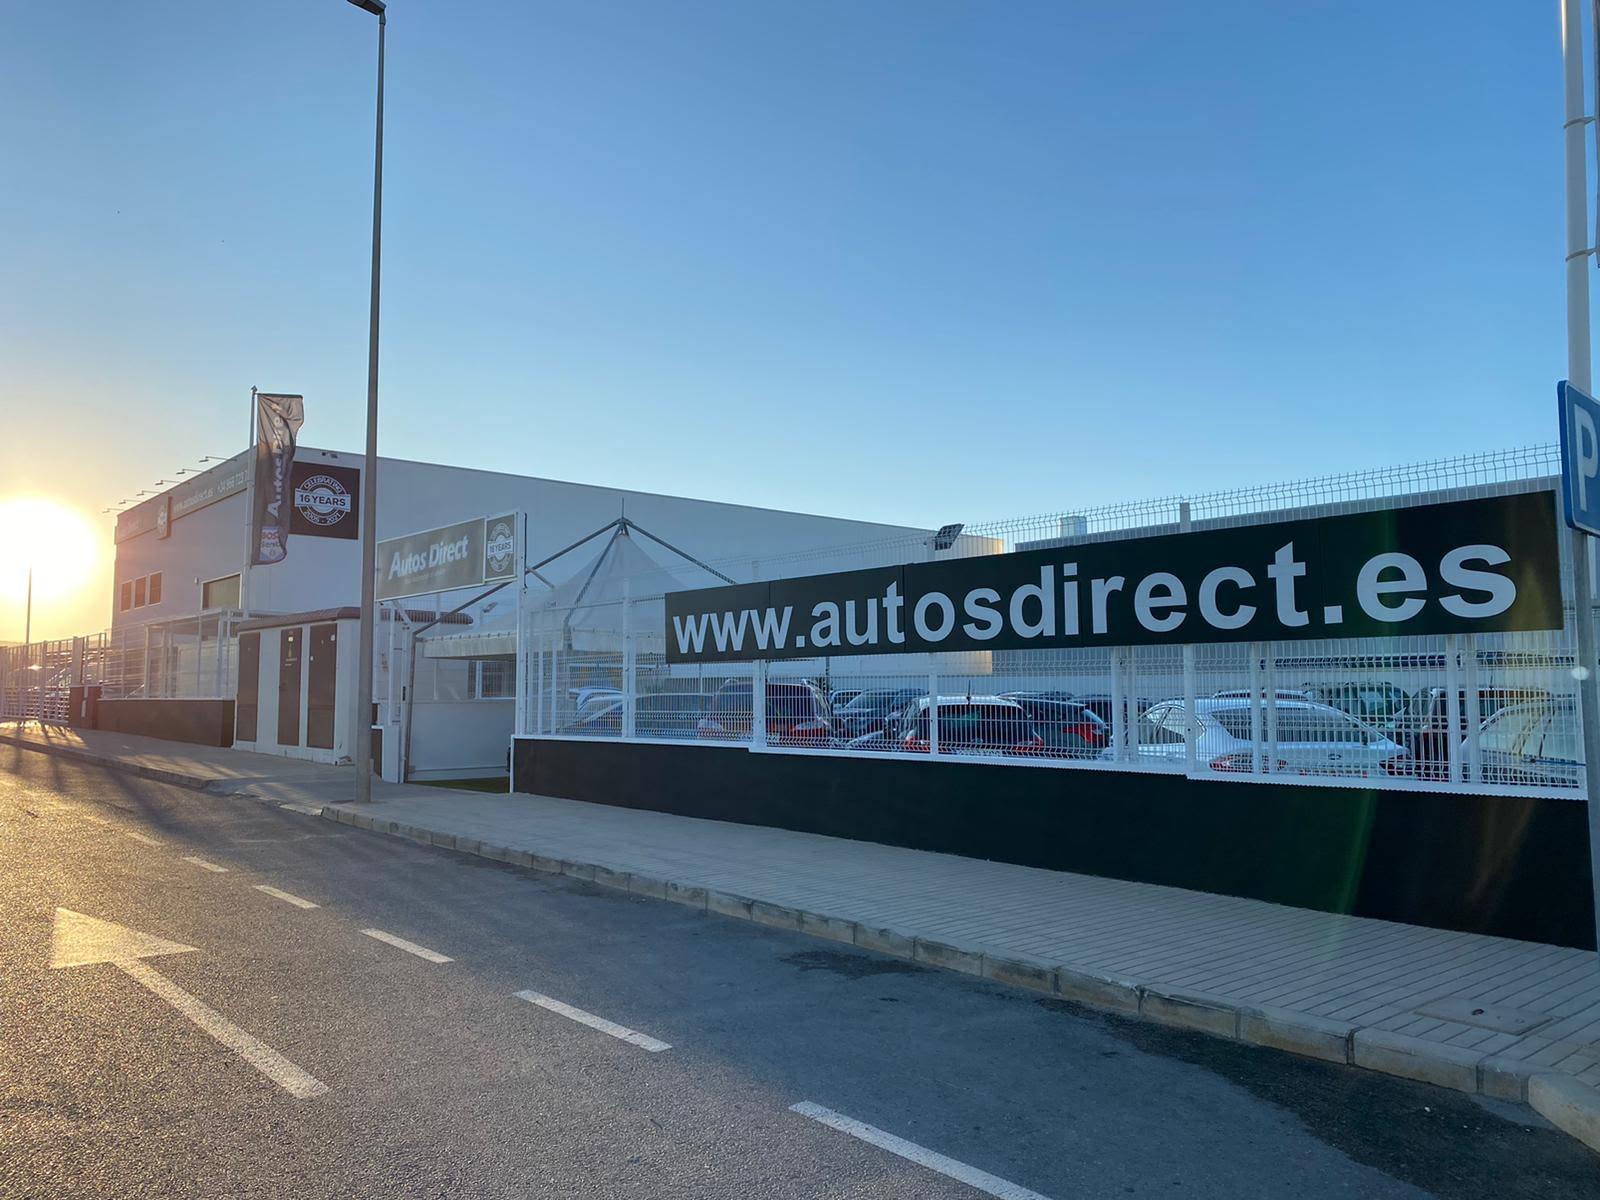 AutosDirect